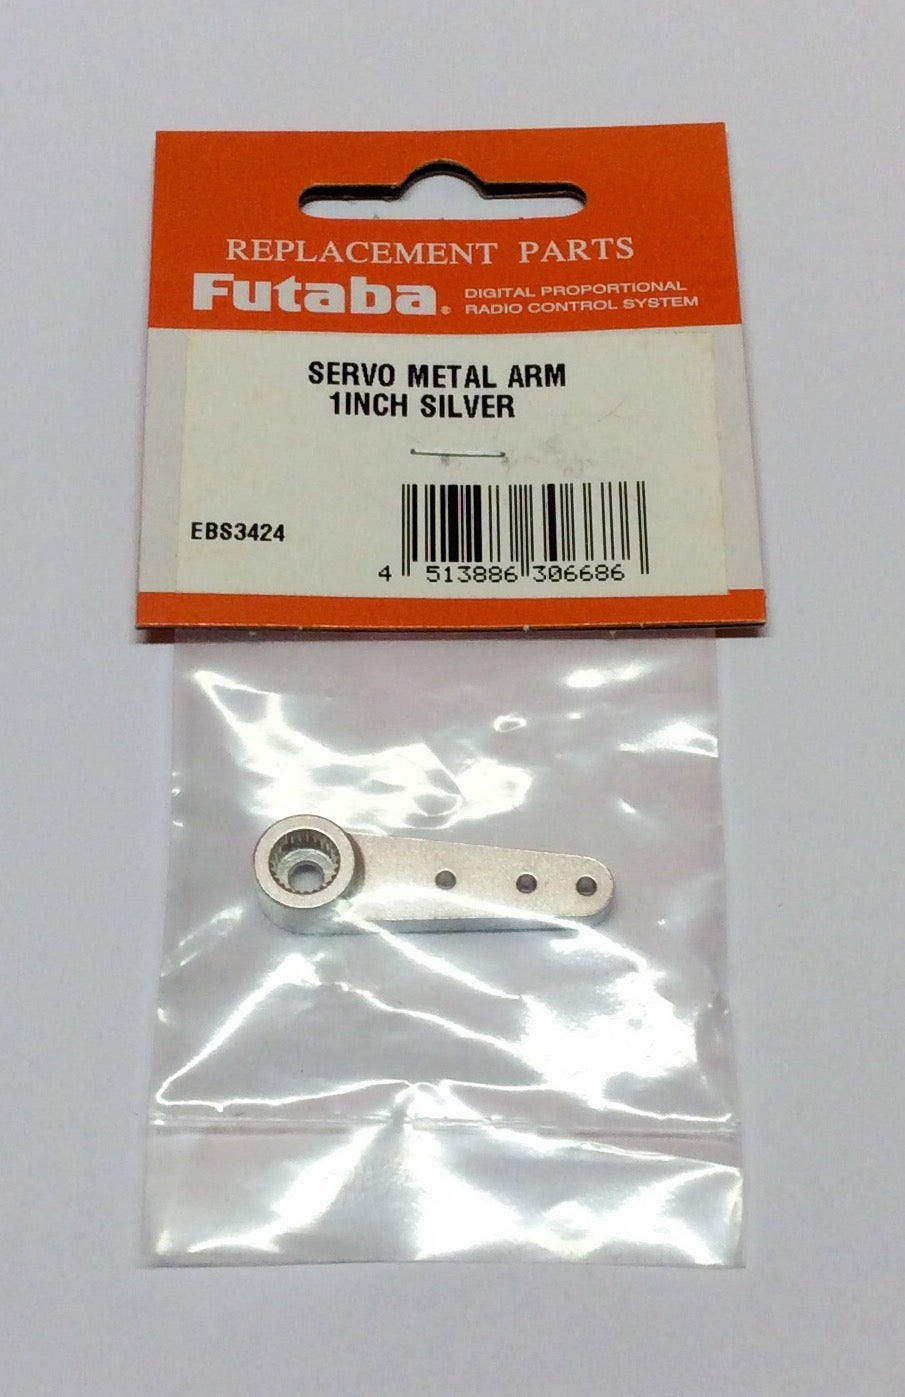 Futaba Alloy Single Servo Metal Arm 1" (25.4mm) Silver FUTEBS3424 in packaging 